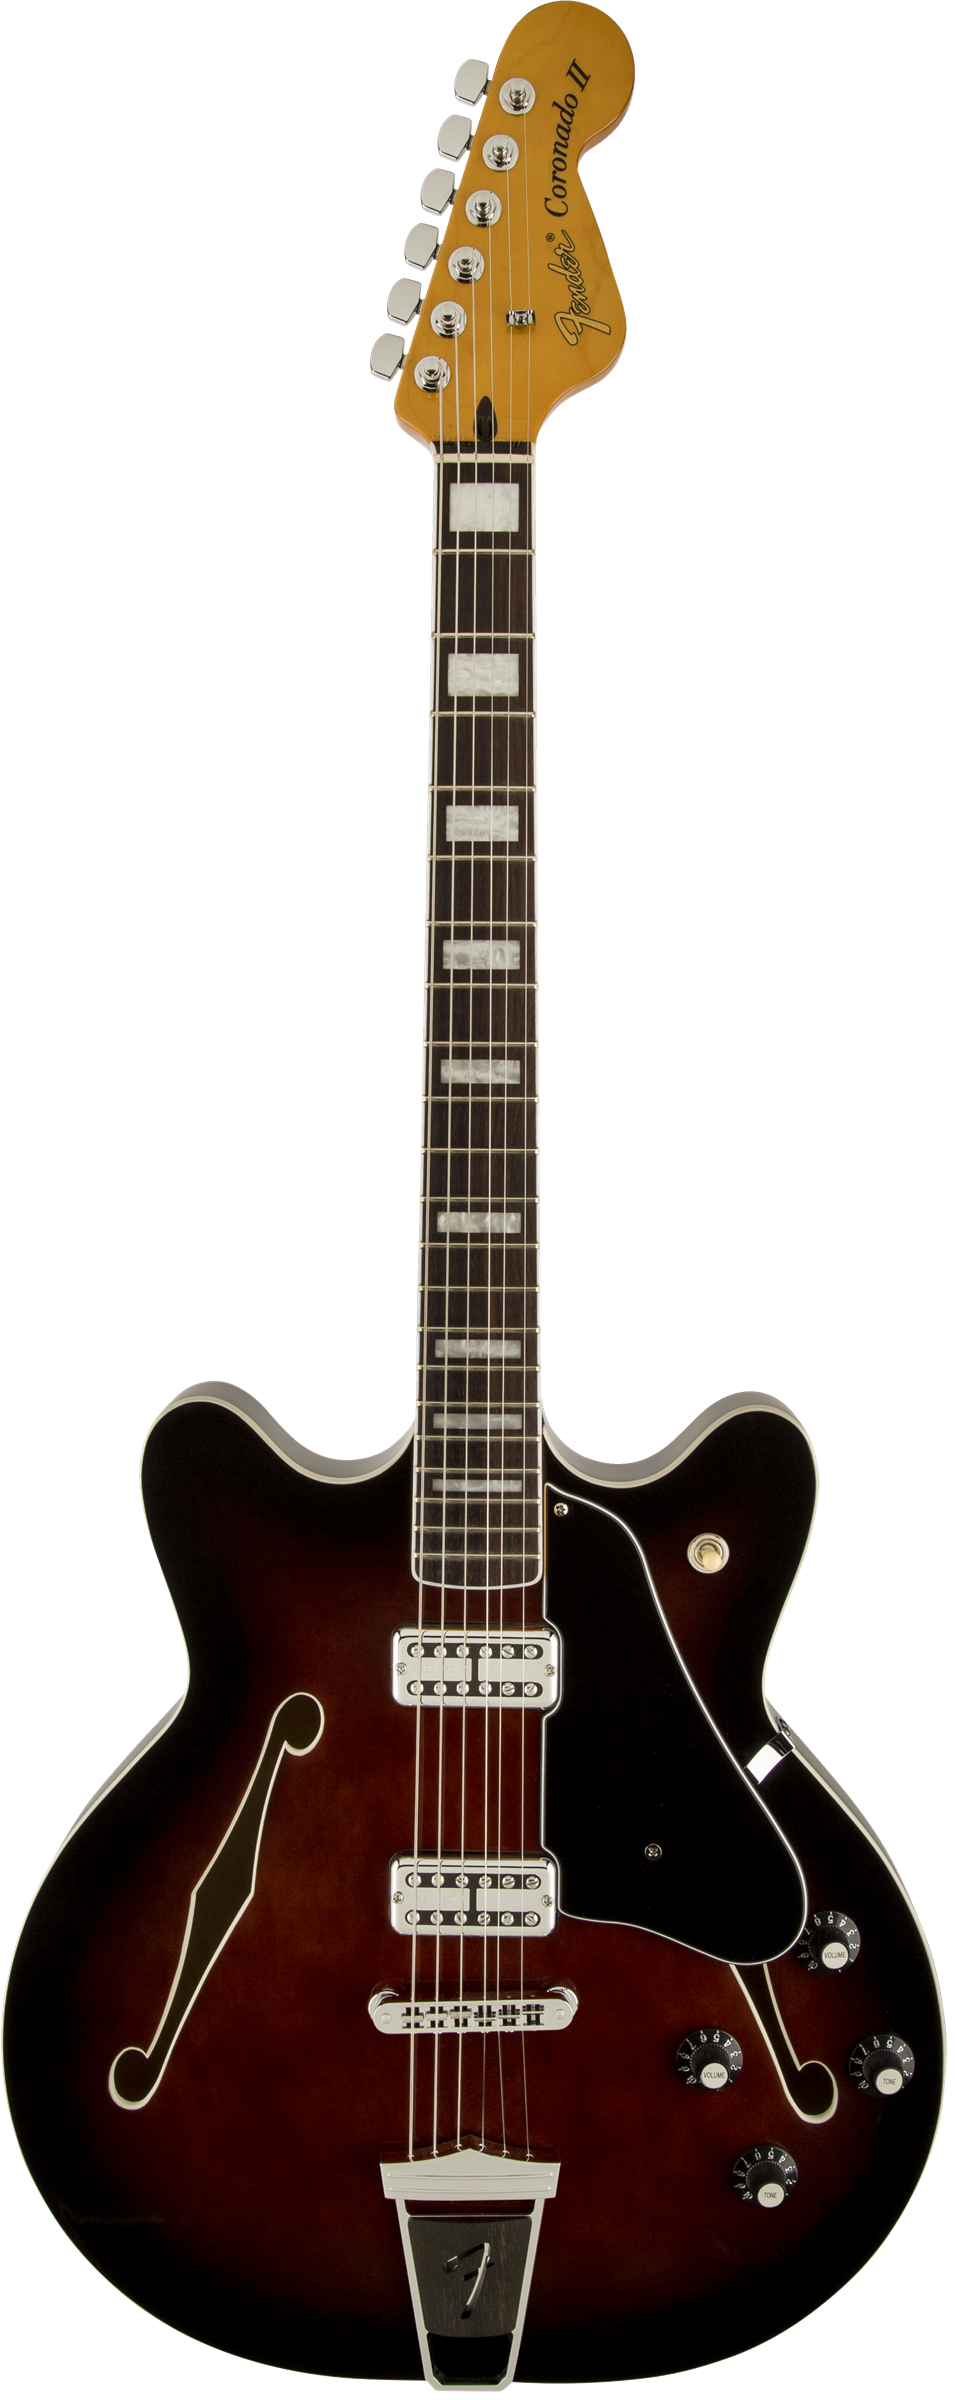 Полуакустическая электрогитара Fender Coronado Guitar, Black Cherry Burst, Rosewood